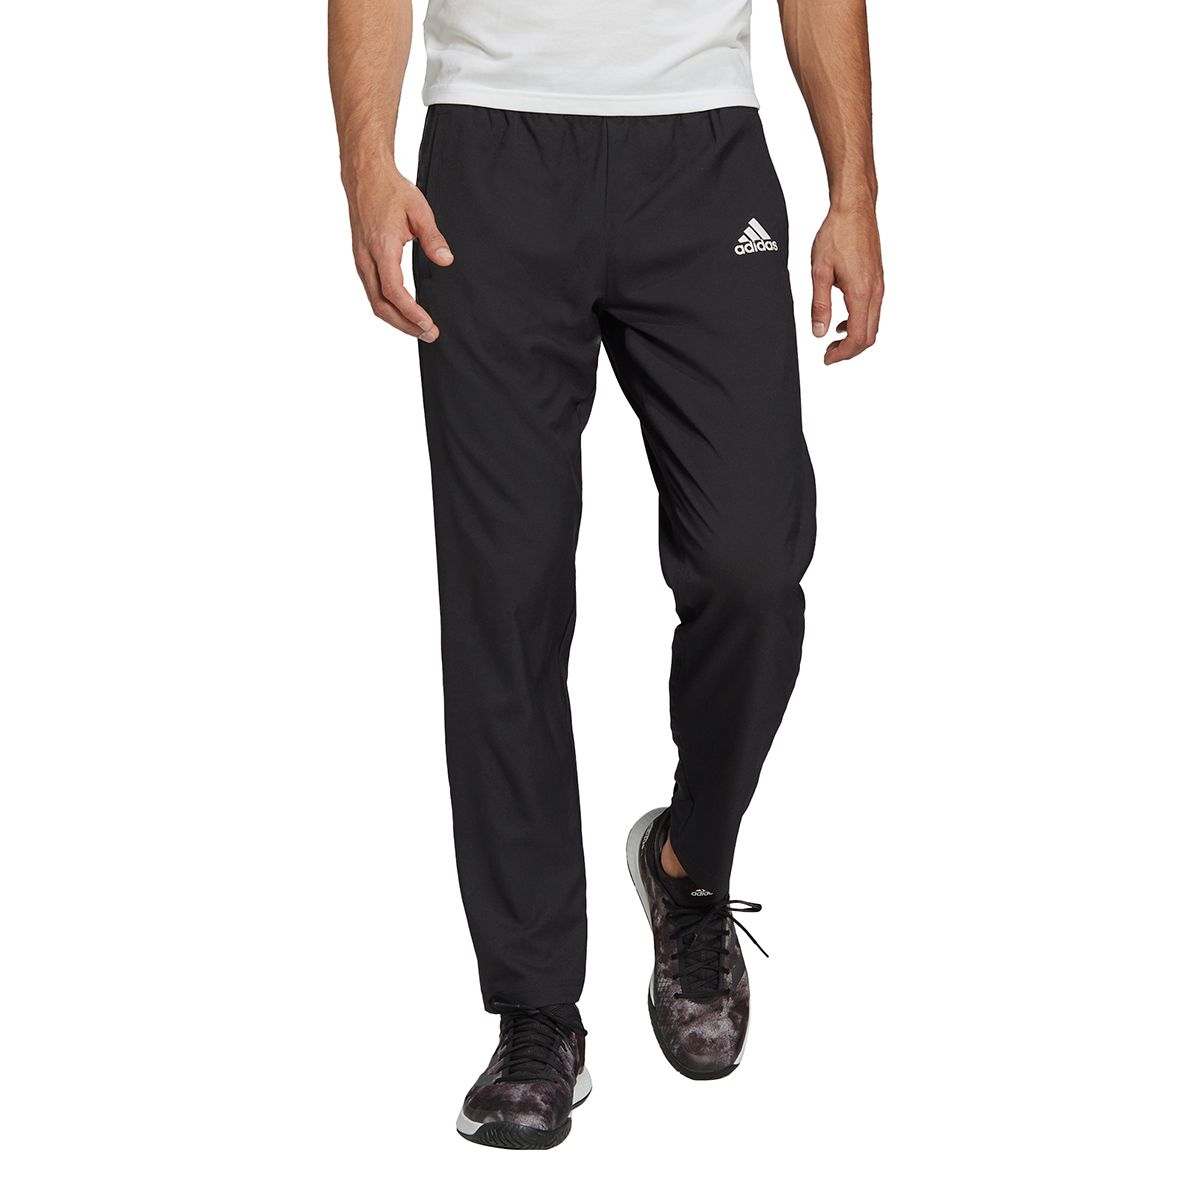 adidas Melbourne Stretch Woven Men's Tennis Pants H67150